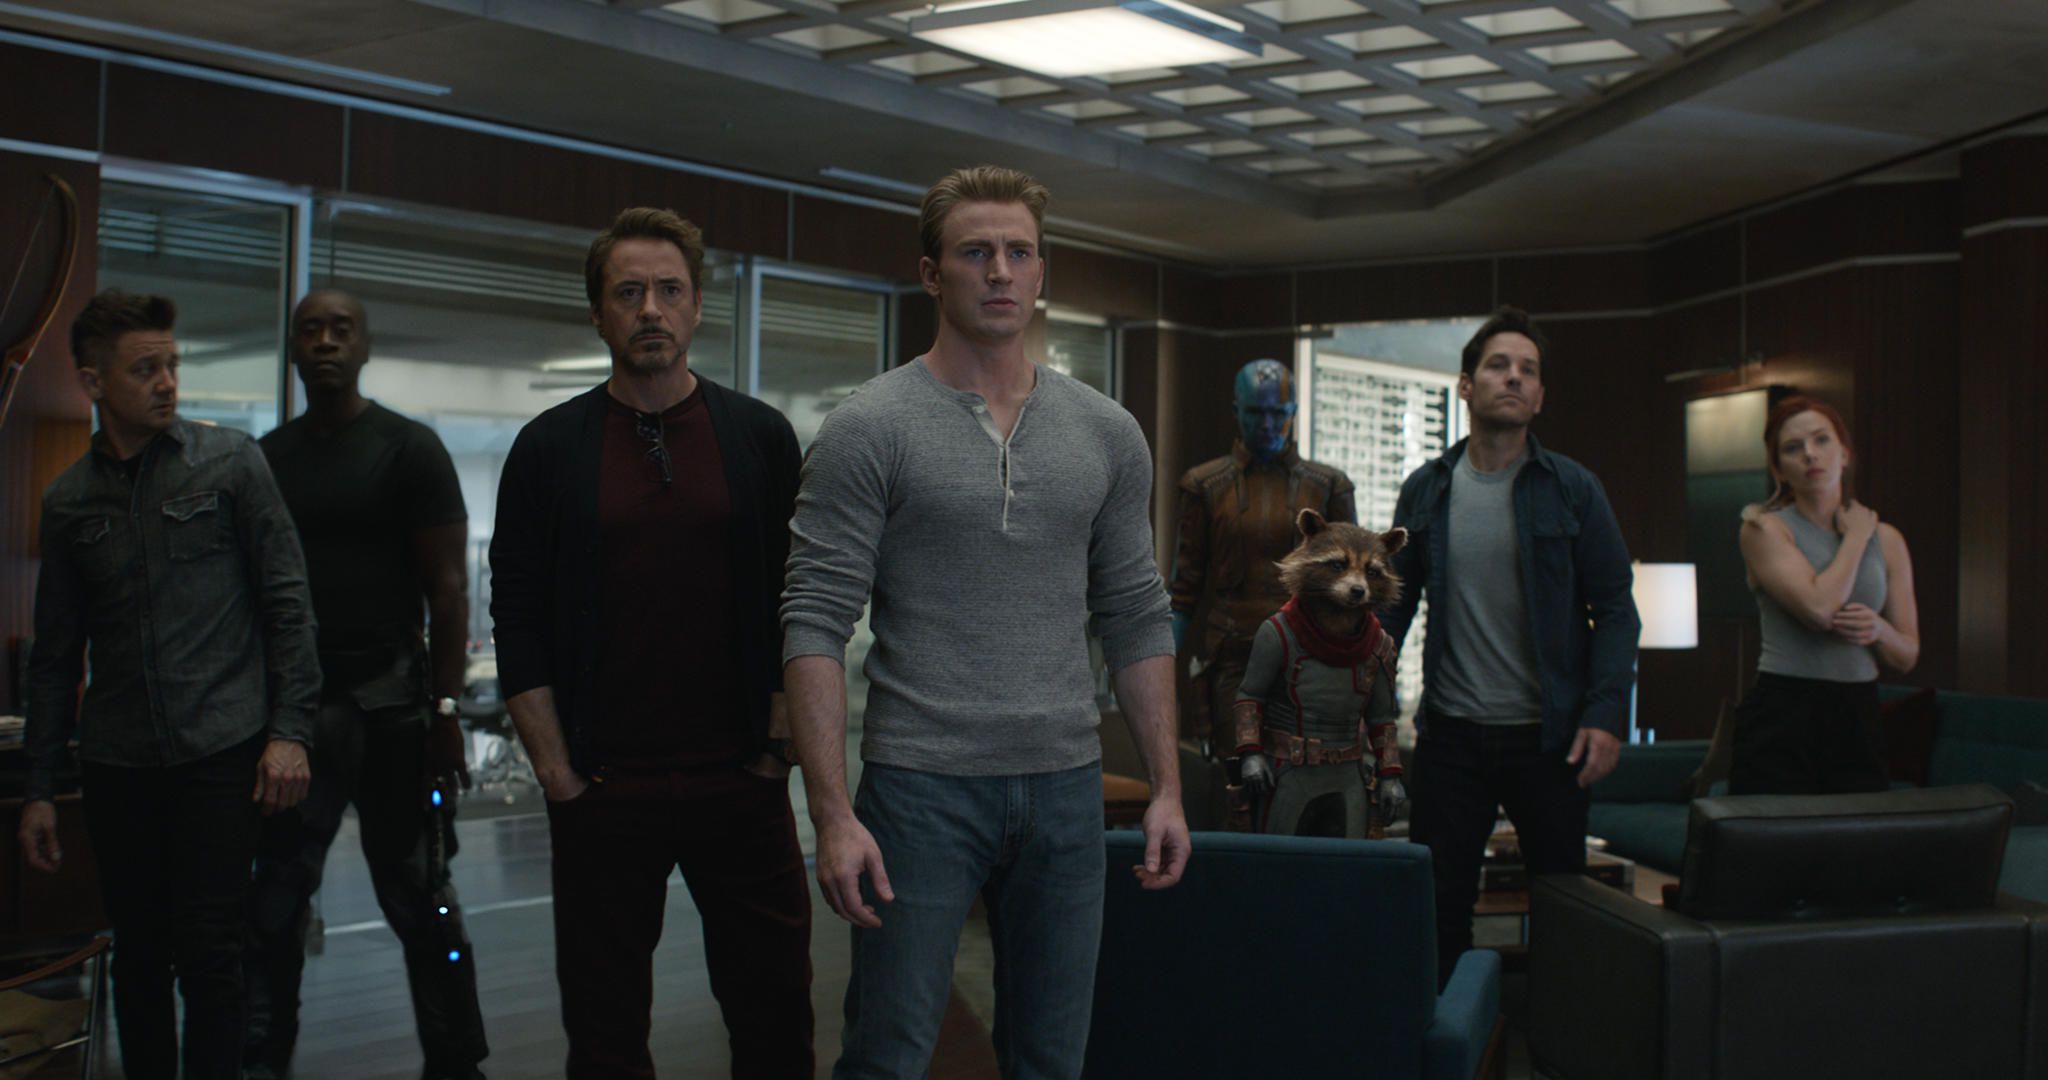 Marvel tung trailer Avengers: Endgame dành cho DVD xem tại nhà, spoil sạch phim cho những ai không ra rạp